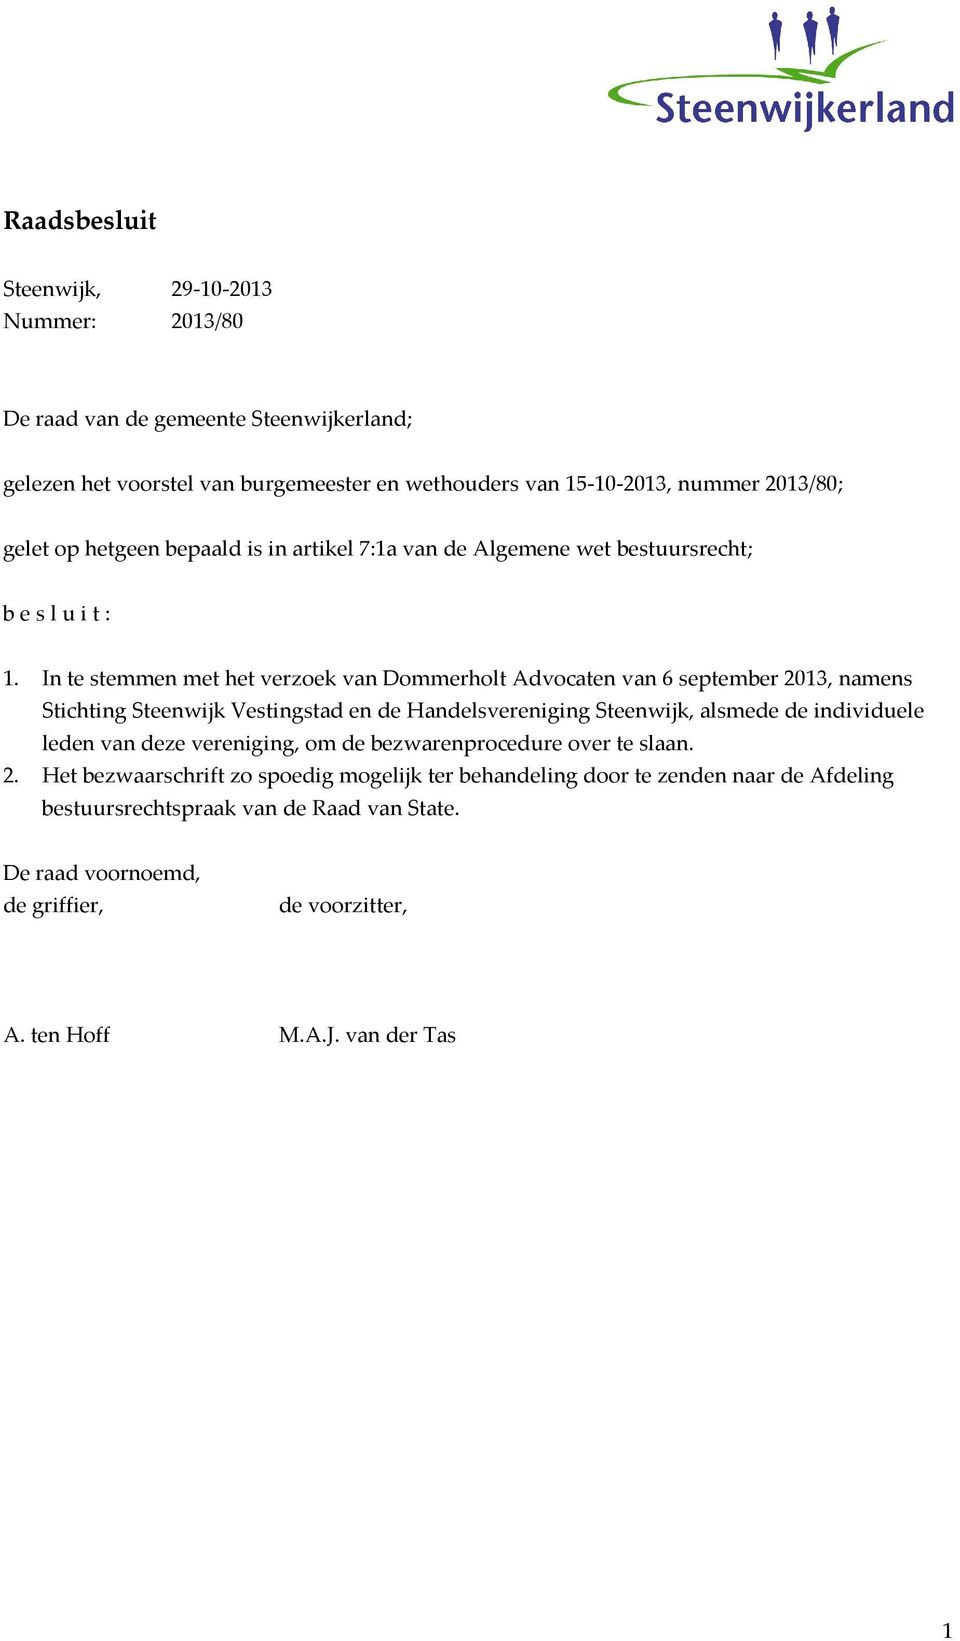 In te stemmen met het verzoek van Dommerholt Advocaten van 6 september 2013, namens Stichting Steenwijk Vestingstad en de Handelsvereniging Steenwijk, alsmede de individuele leden